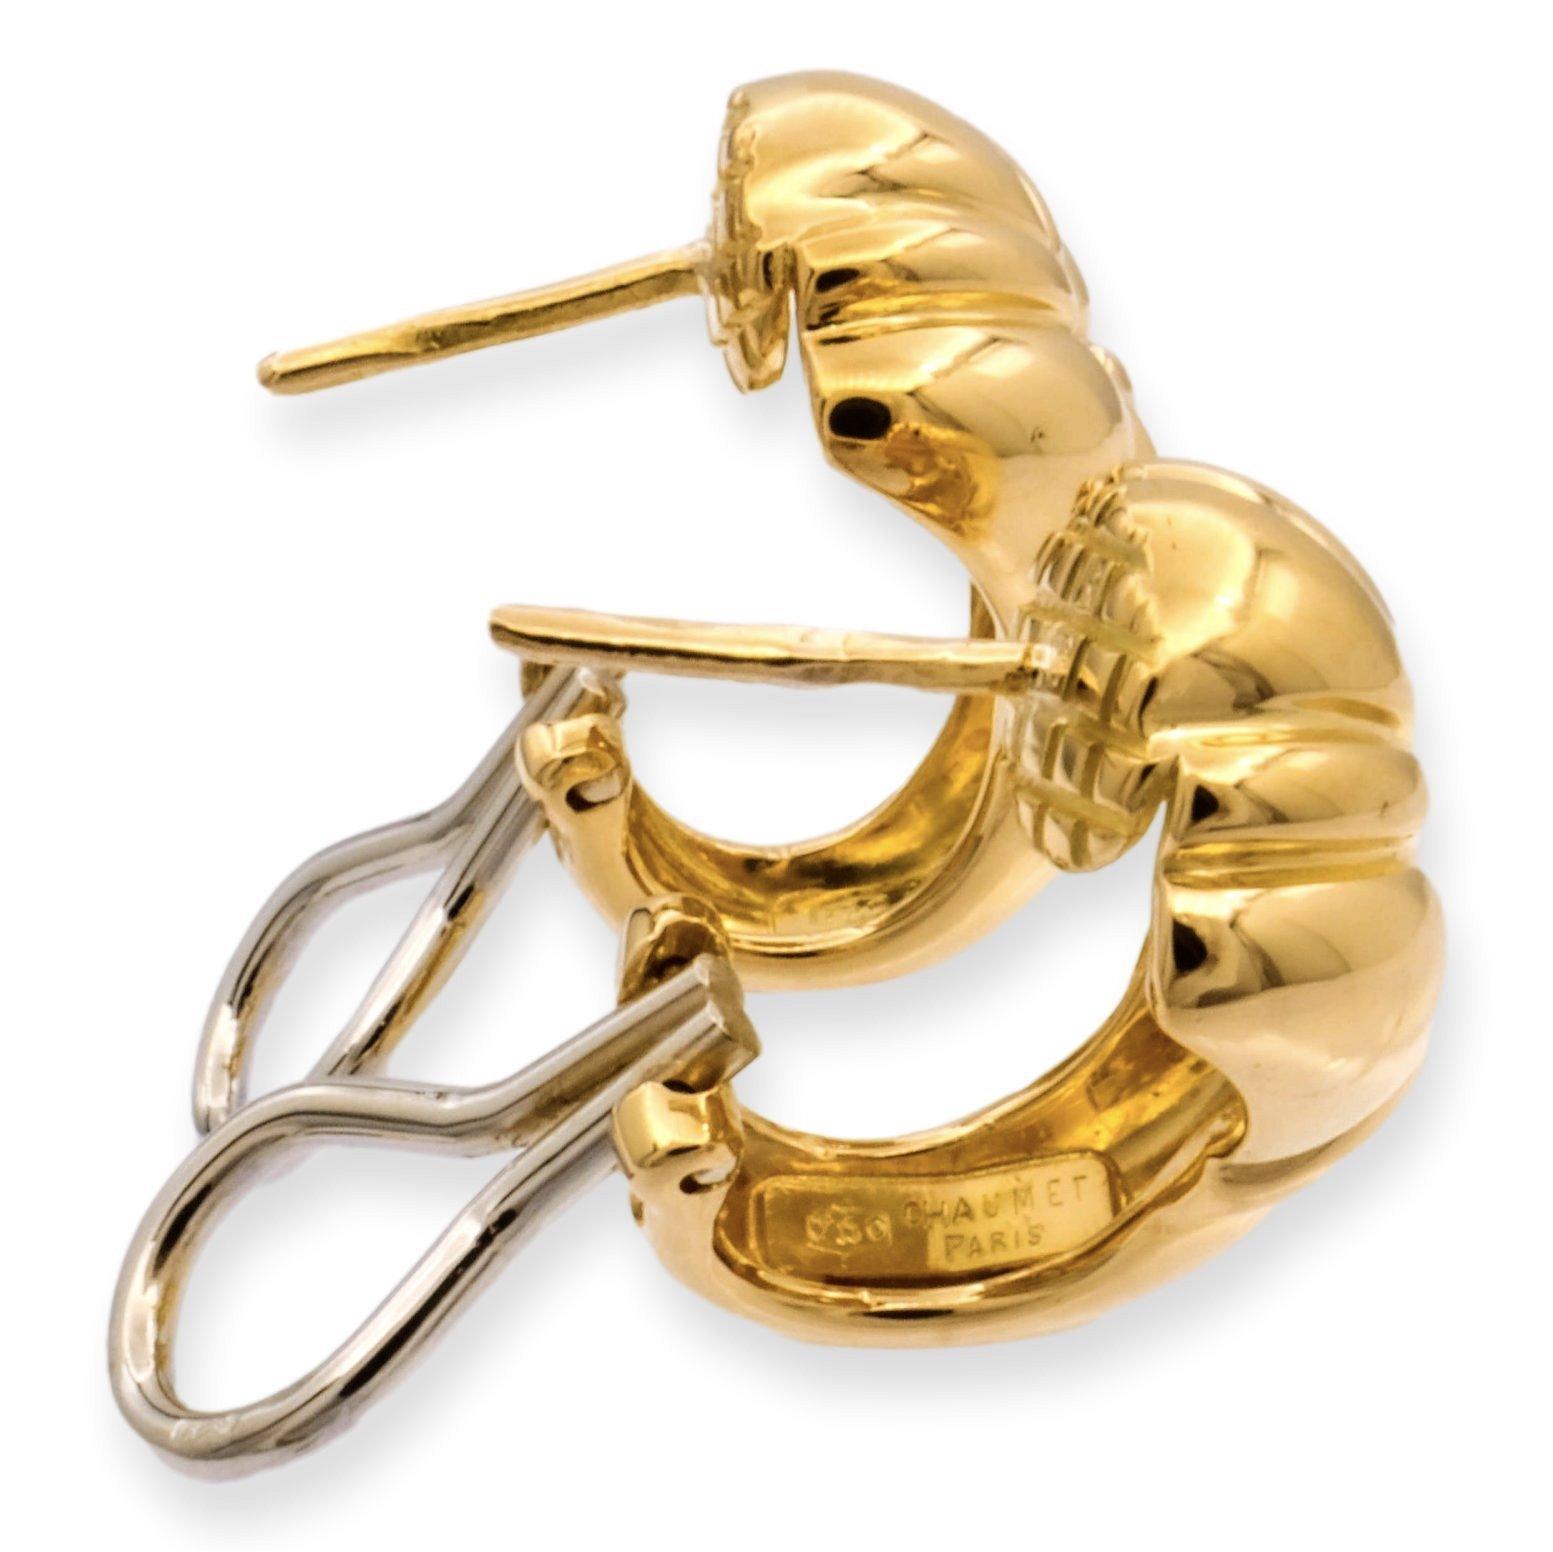 Ein klassisches Paar Ohrringe, signiert von CHAUMET, gefertigt aus 18 Karat hochglanzpoliertem Gelbgold in einem klobigen Design mit Omega-Clips und -Stiften. (Beiträge können auf Wunsch entfernt werden). Ohrring verjüngt sich. Vollständig